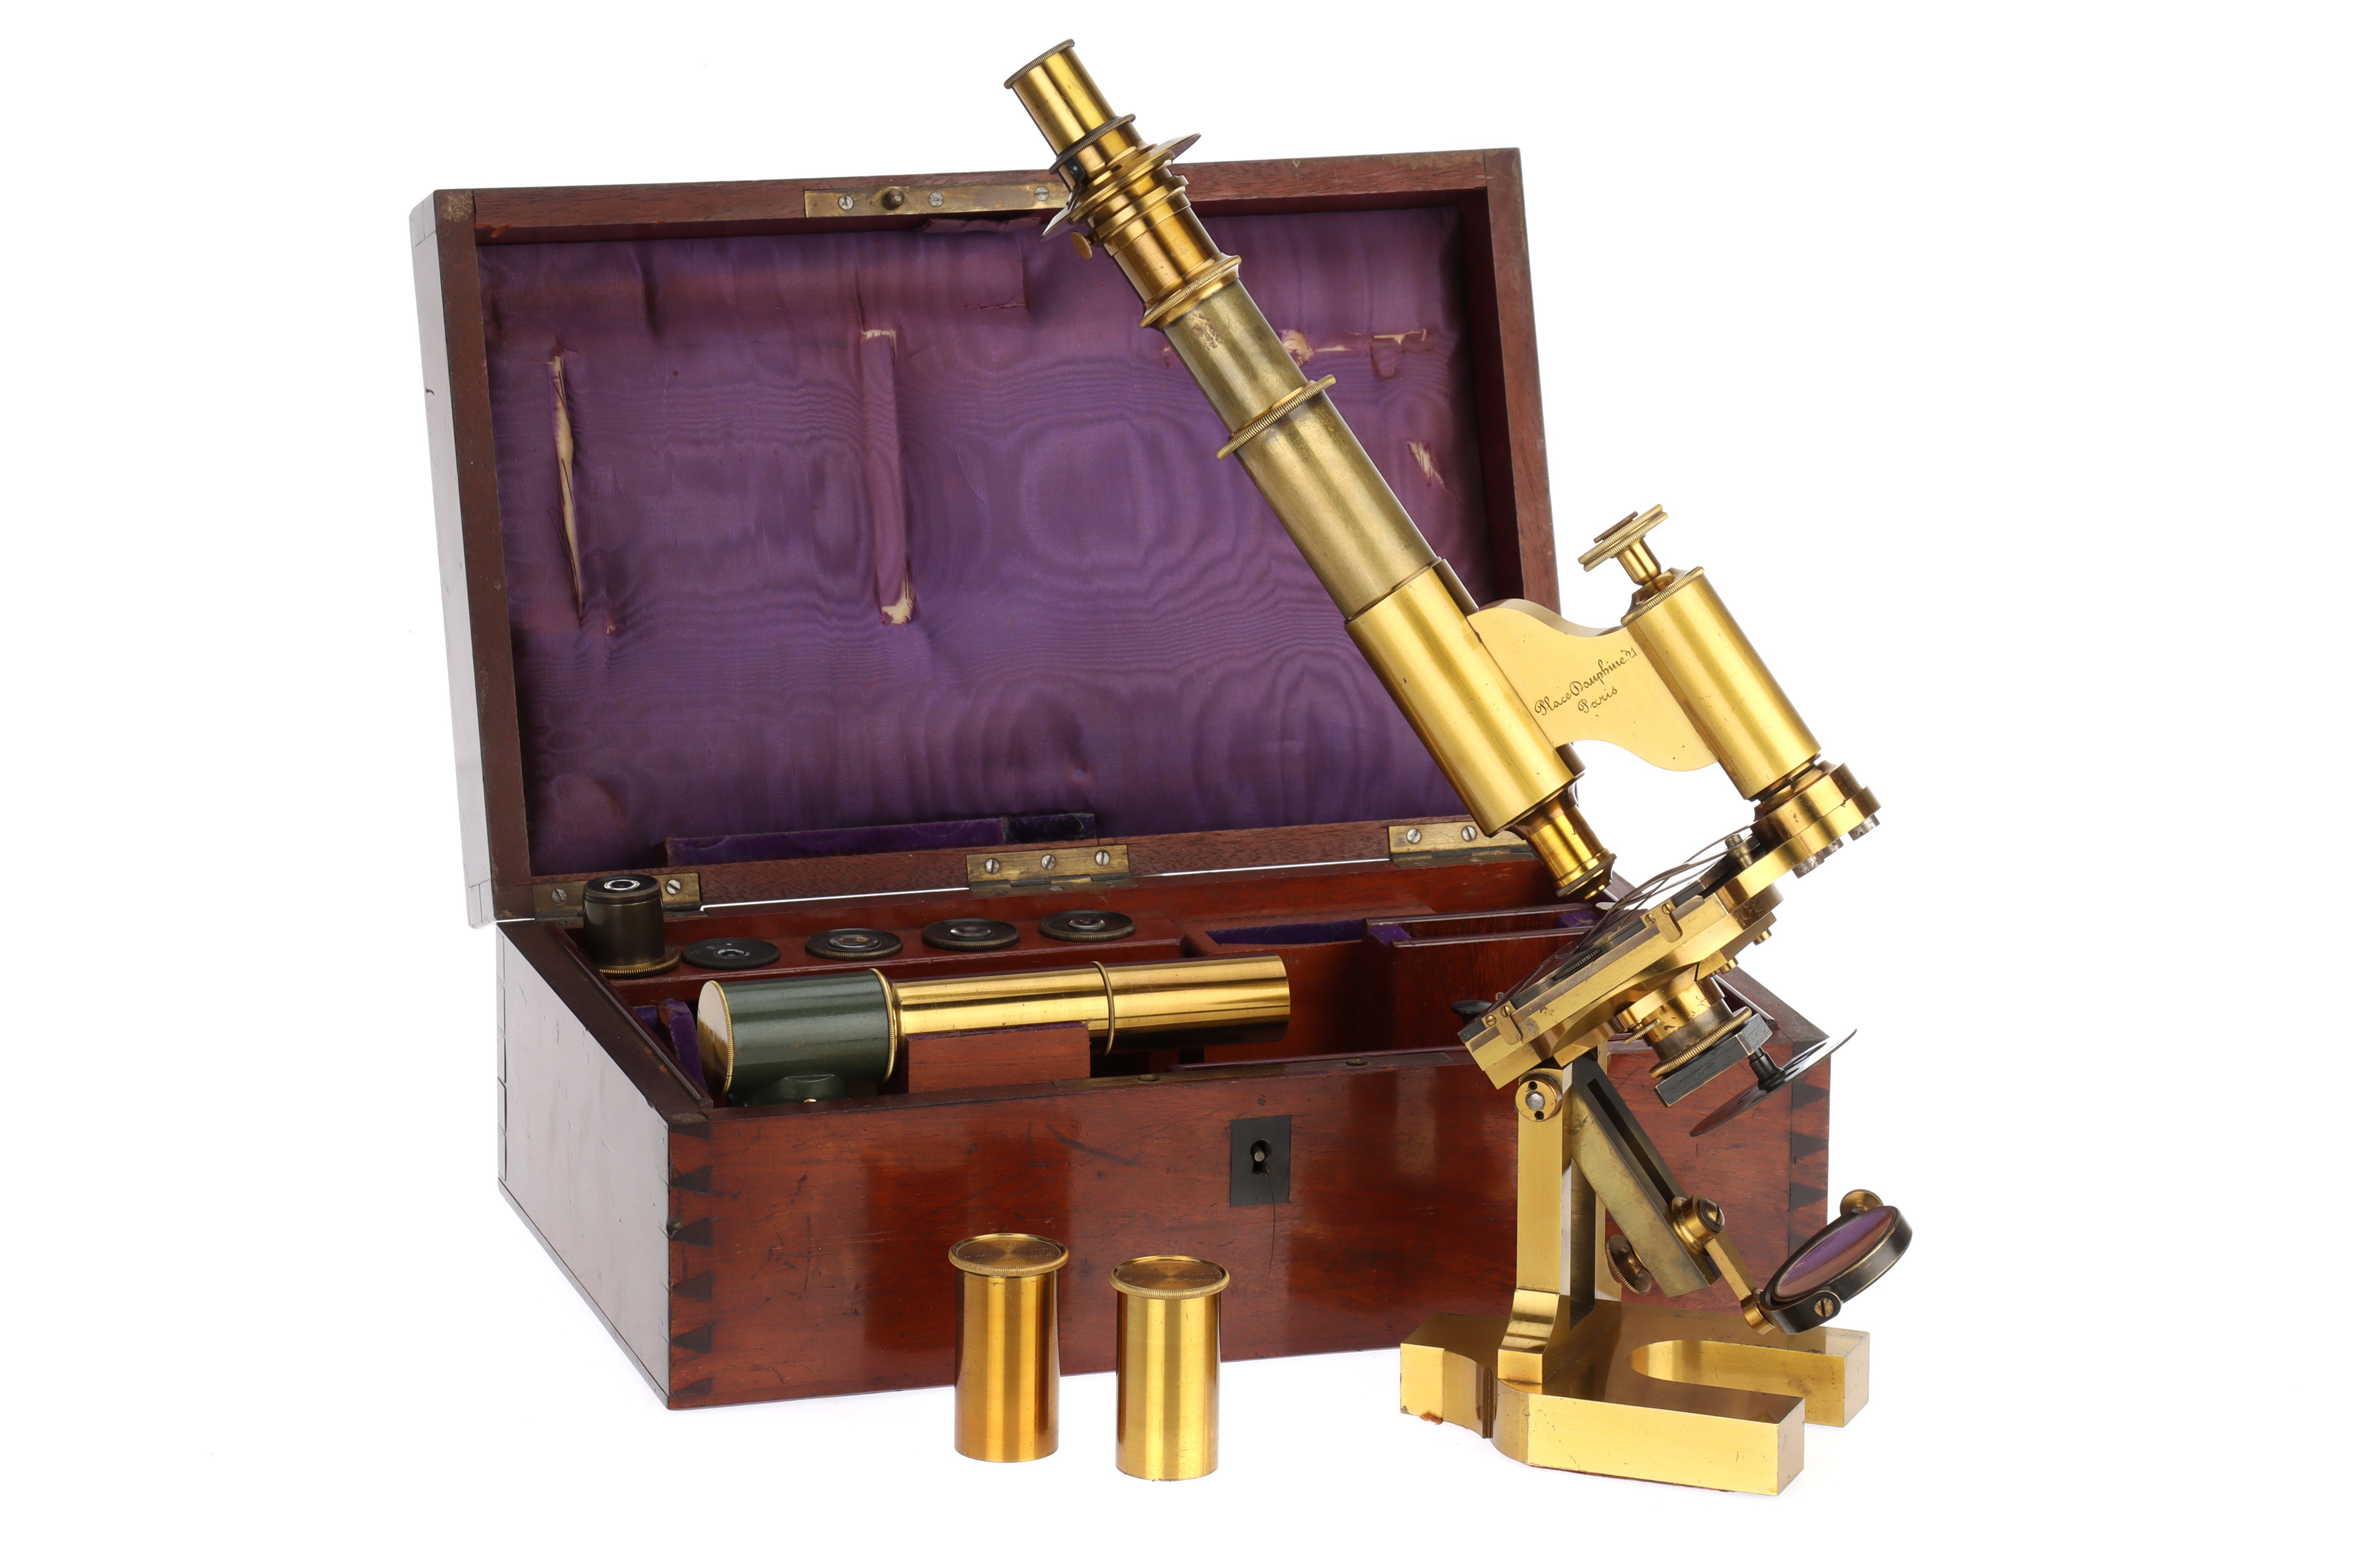 A Polarizing Microscope By Hartnack,